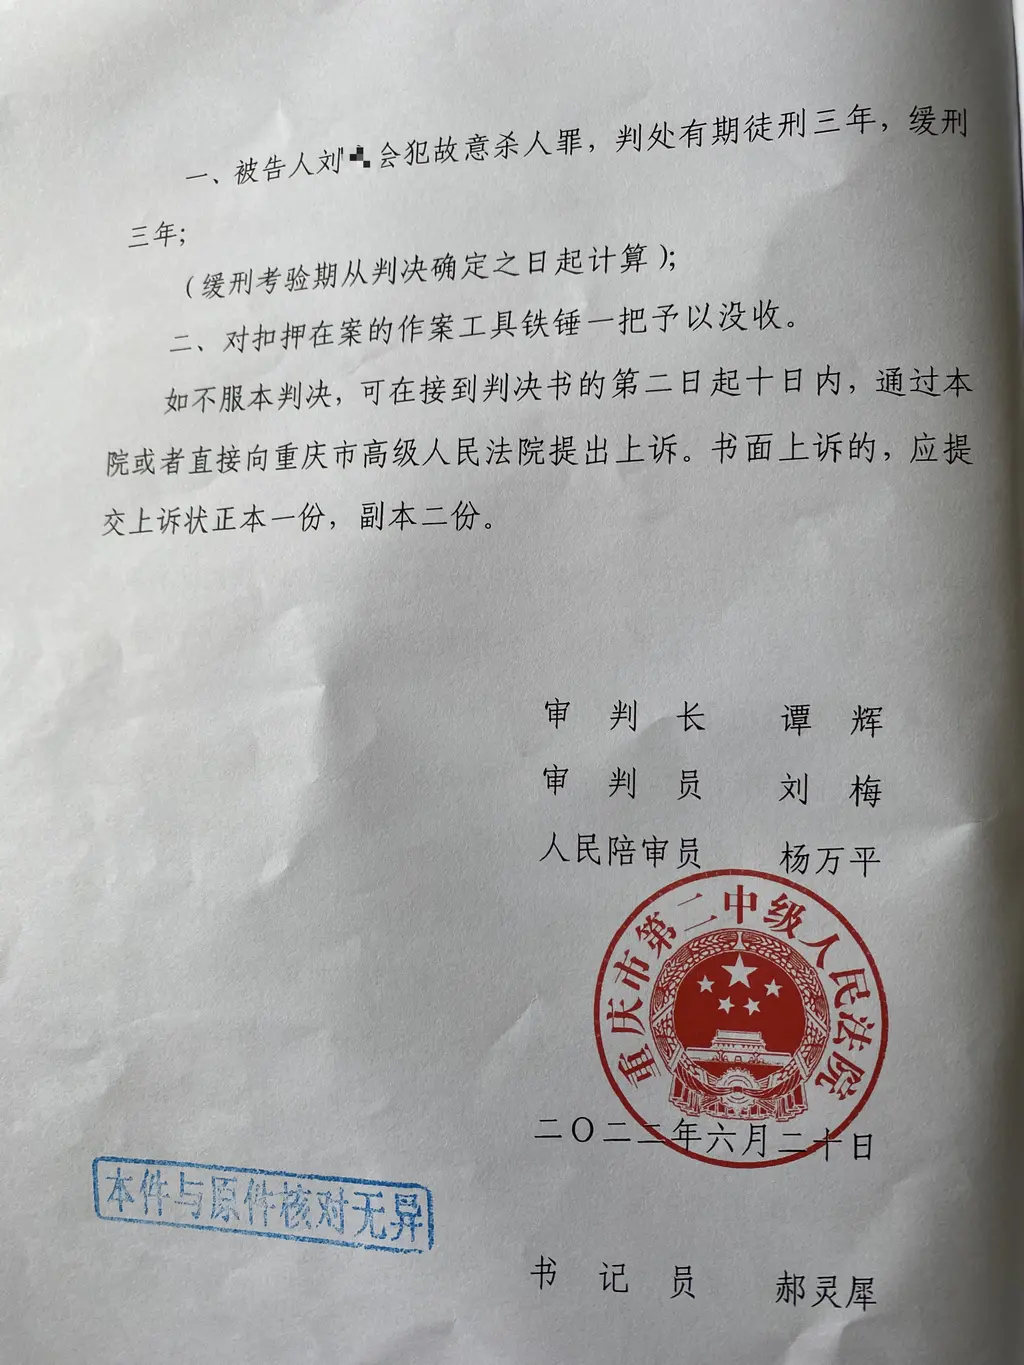 重庆市二中院6月23日在梁平区法院对刘某会故意杀人一案进行宣判。